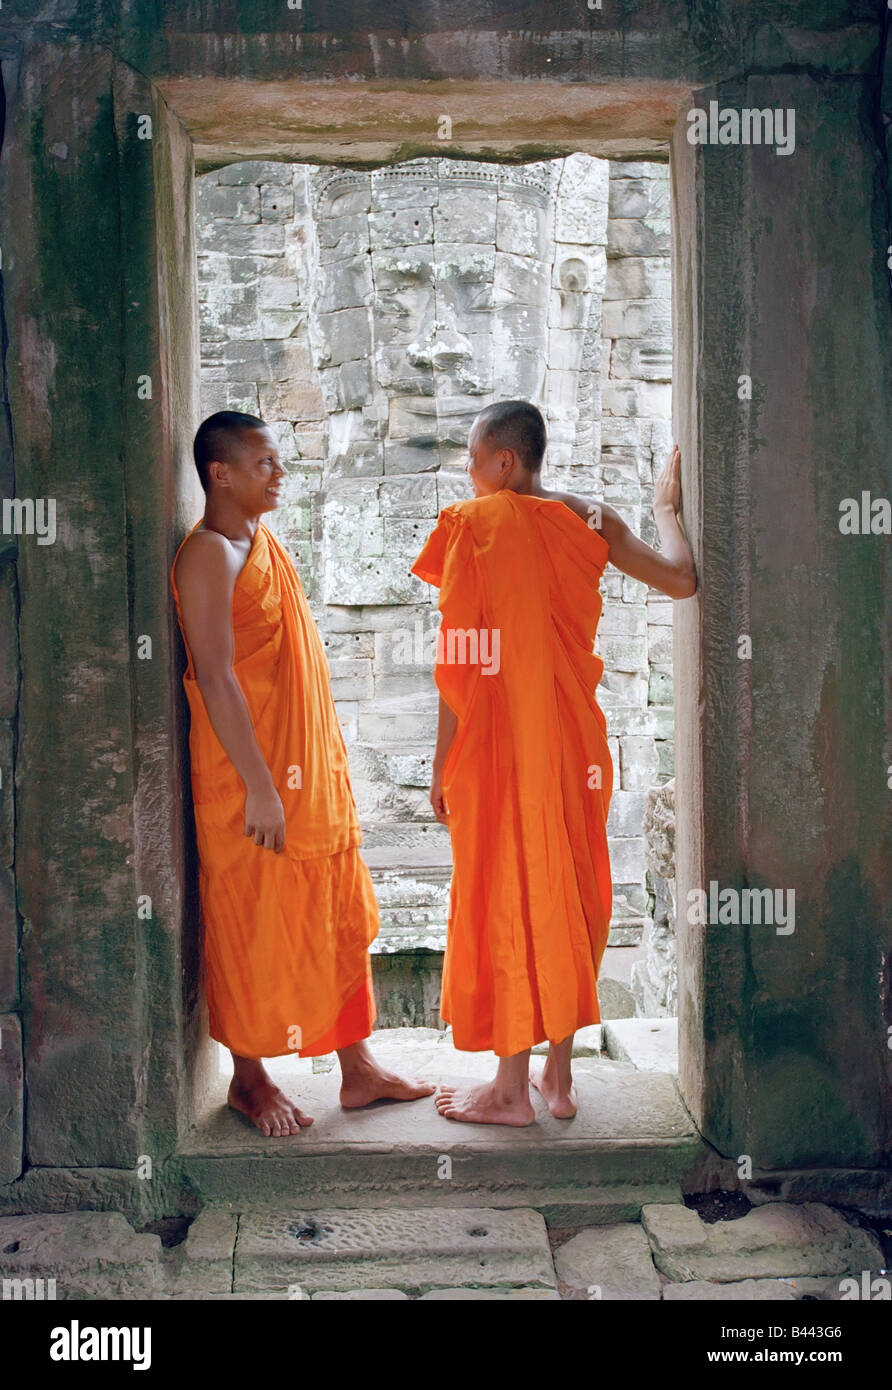 Cambodge, Angkor Wat, le temple Bayon, deux moines debout dans une porte Banque D'Images